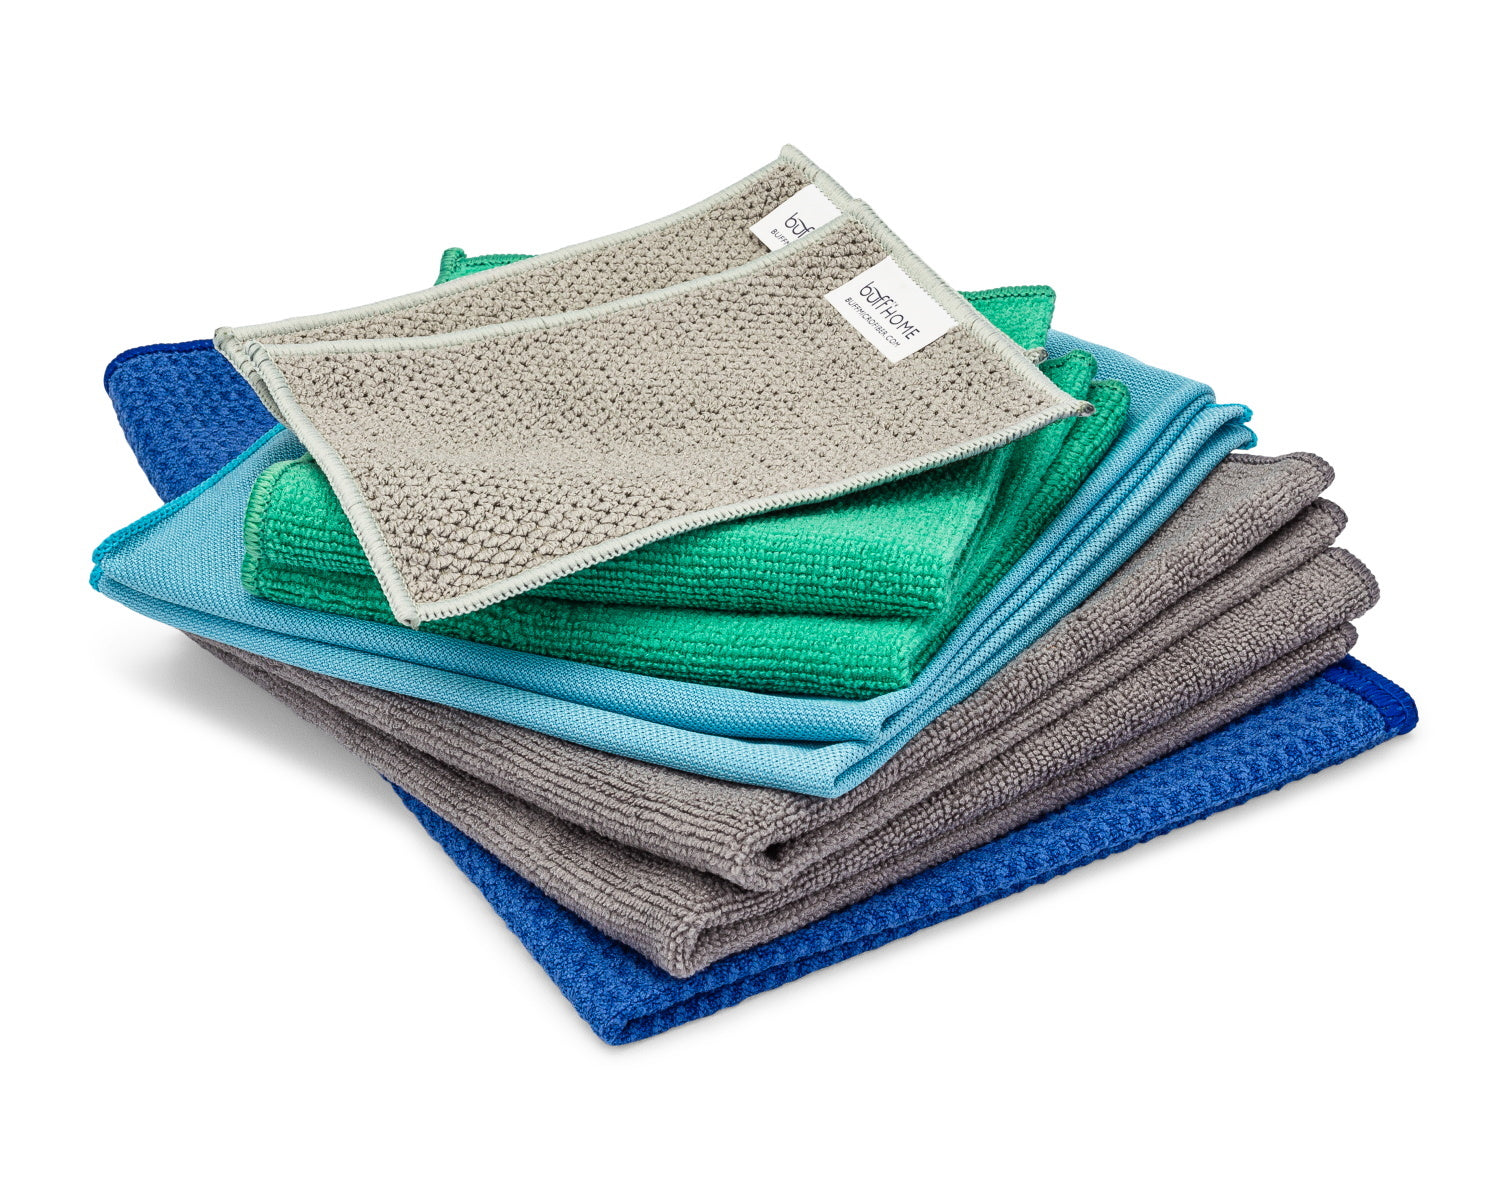 Variety Pack Of Microfiber Towels